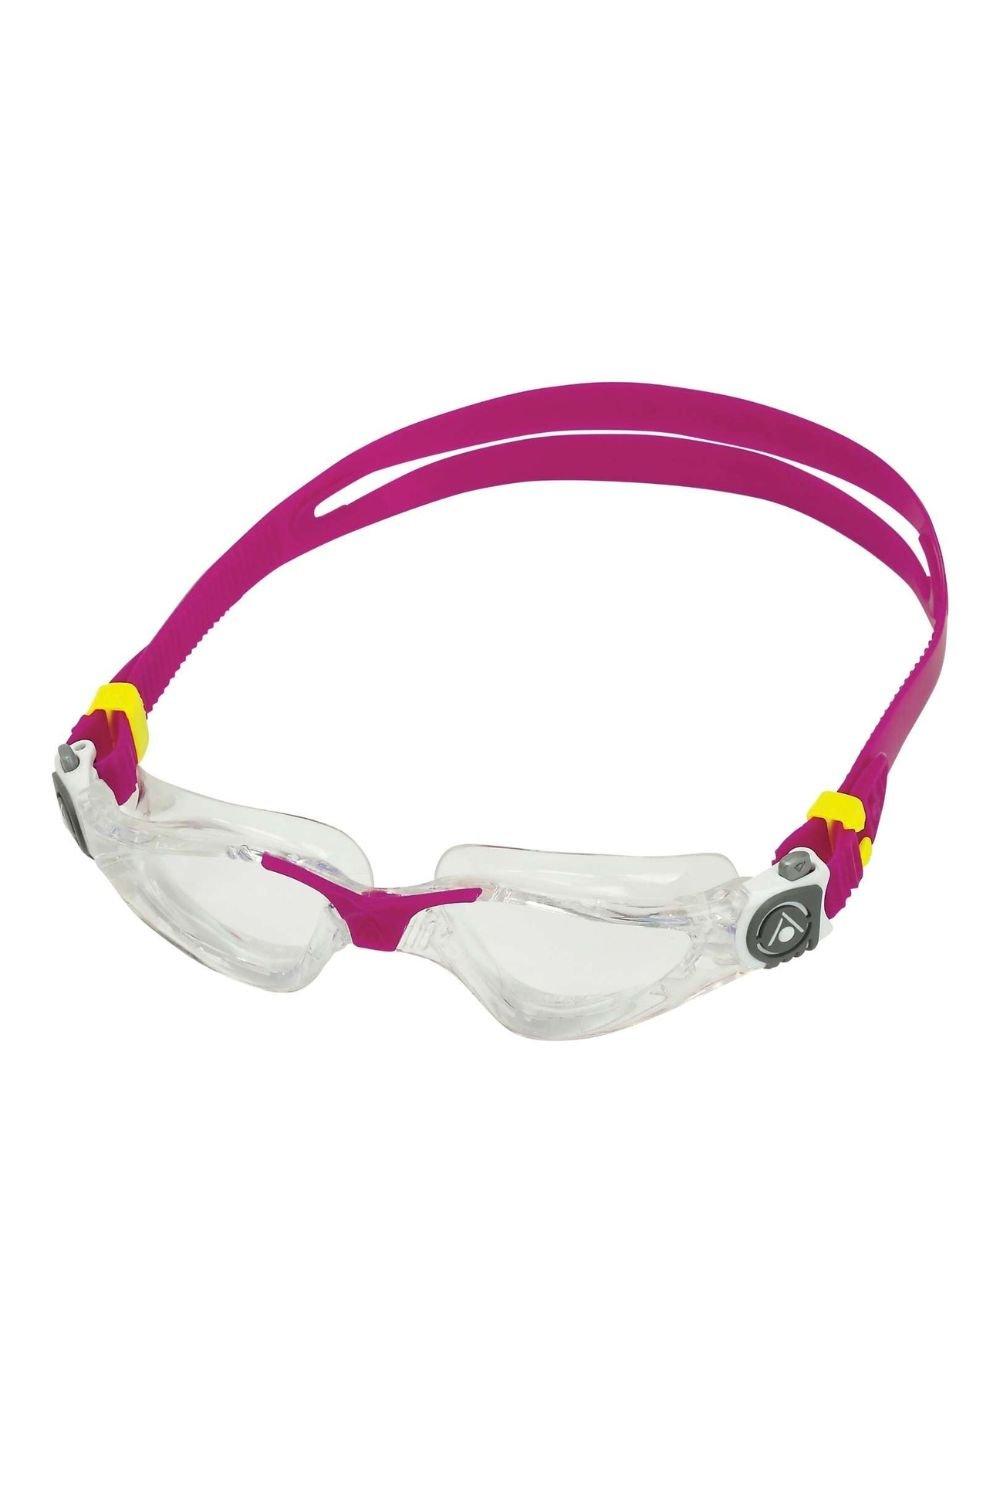 Женские очки для плавания Kayenne Aquasphere, розовый очки для плавания для взрослых для близорукости водонепроницаемые с ушками для плавания по рецепту незапотевающие очки для дайвинга